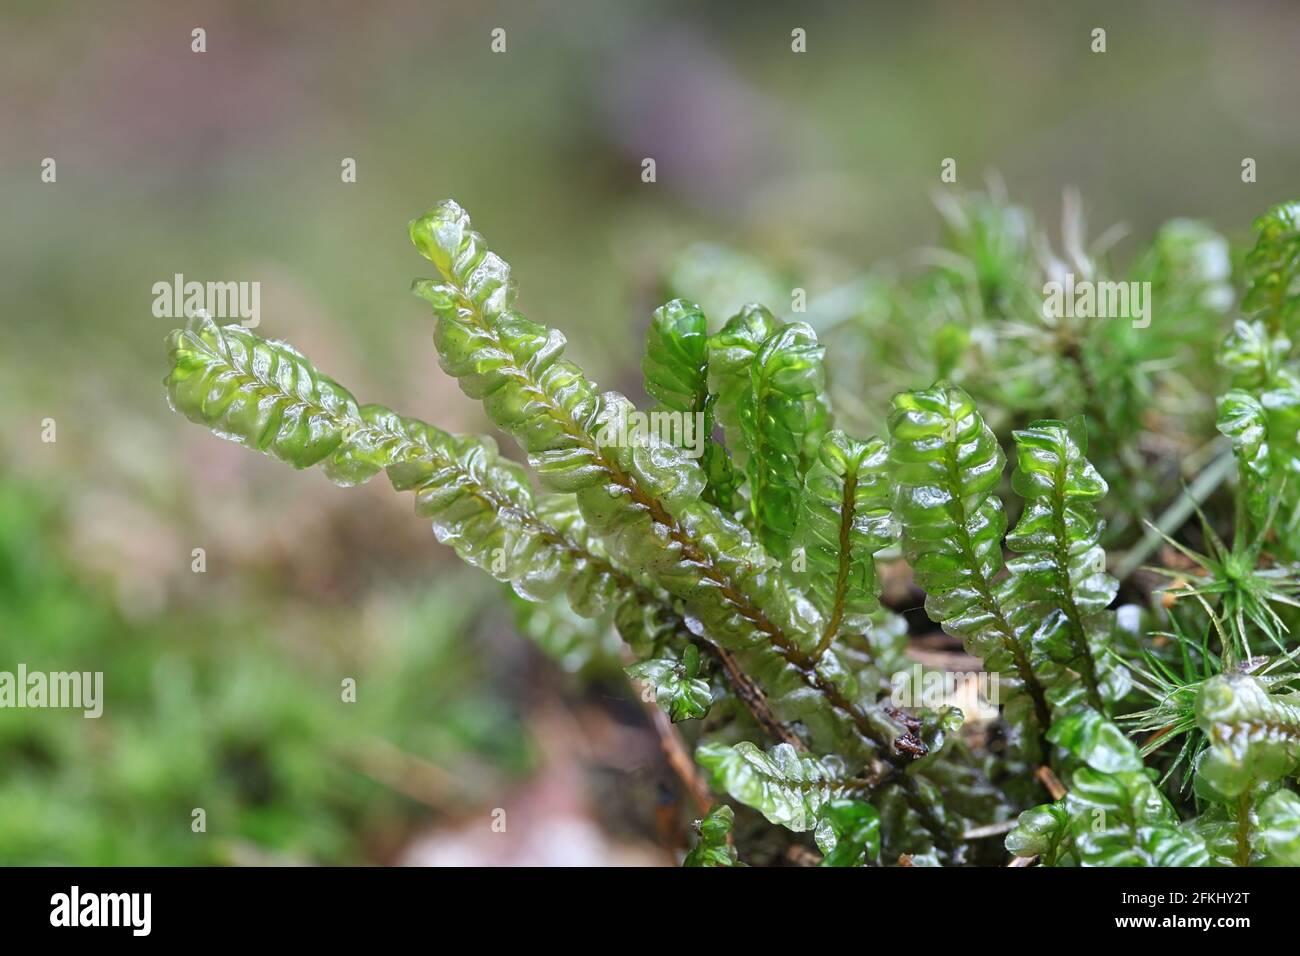 plagiochila-asplenioides-known-as-greater-featherwort-moss-2FKHY2T.jpg